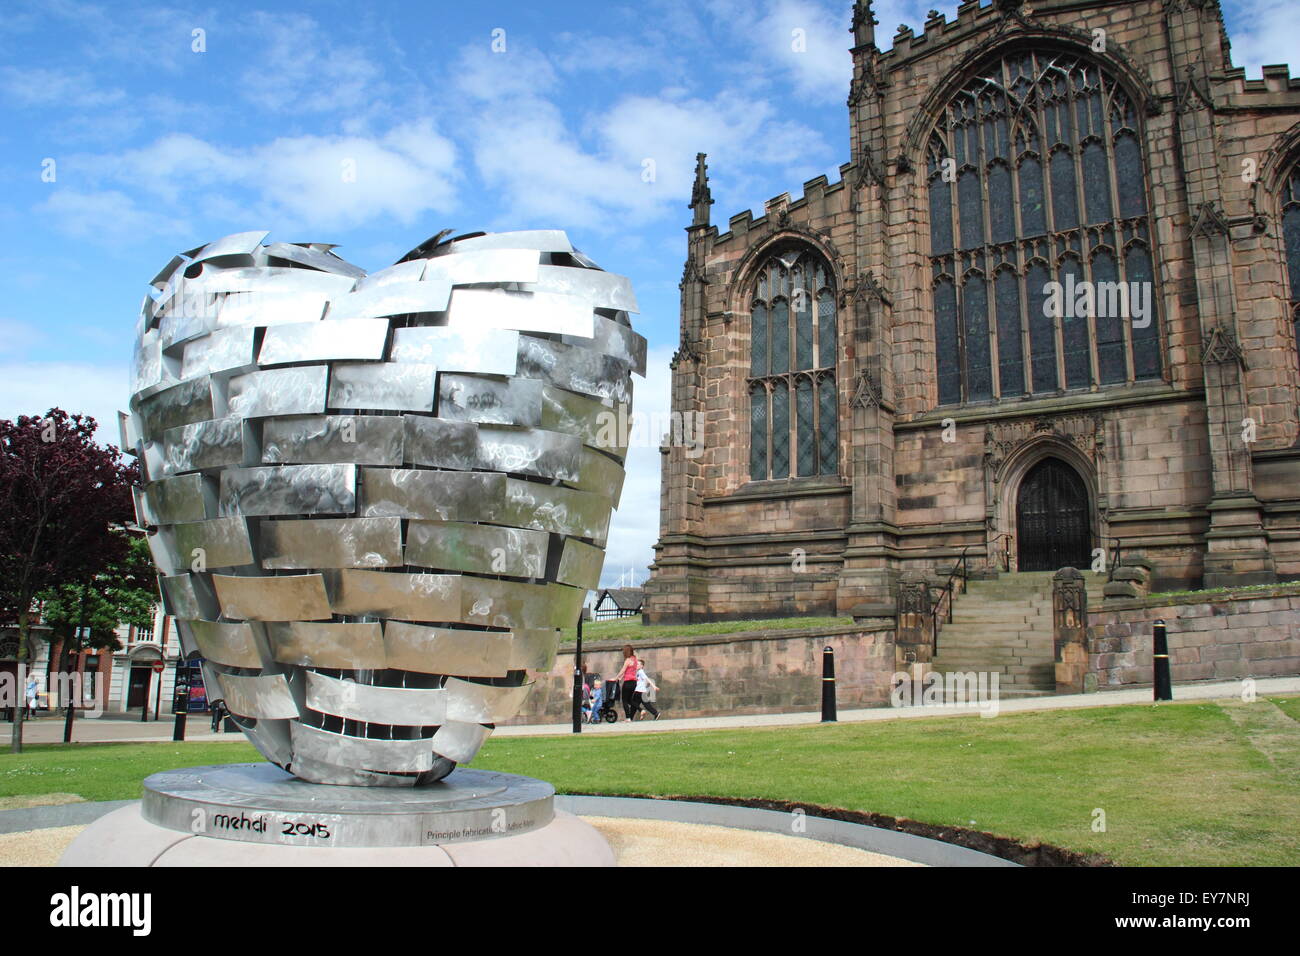 "Heart of Steel" Skulptur des Künstlers Steve Mehdi in Münster Gärten außerhalb Rotherham Minster, Rotherham, Yorkshire, Großbritannien Stockfoto